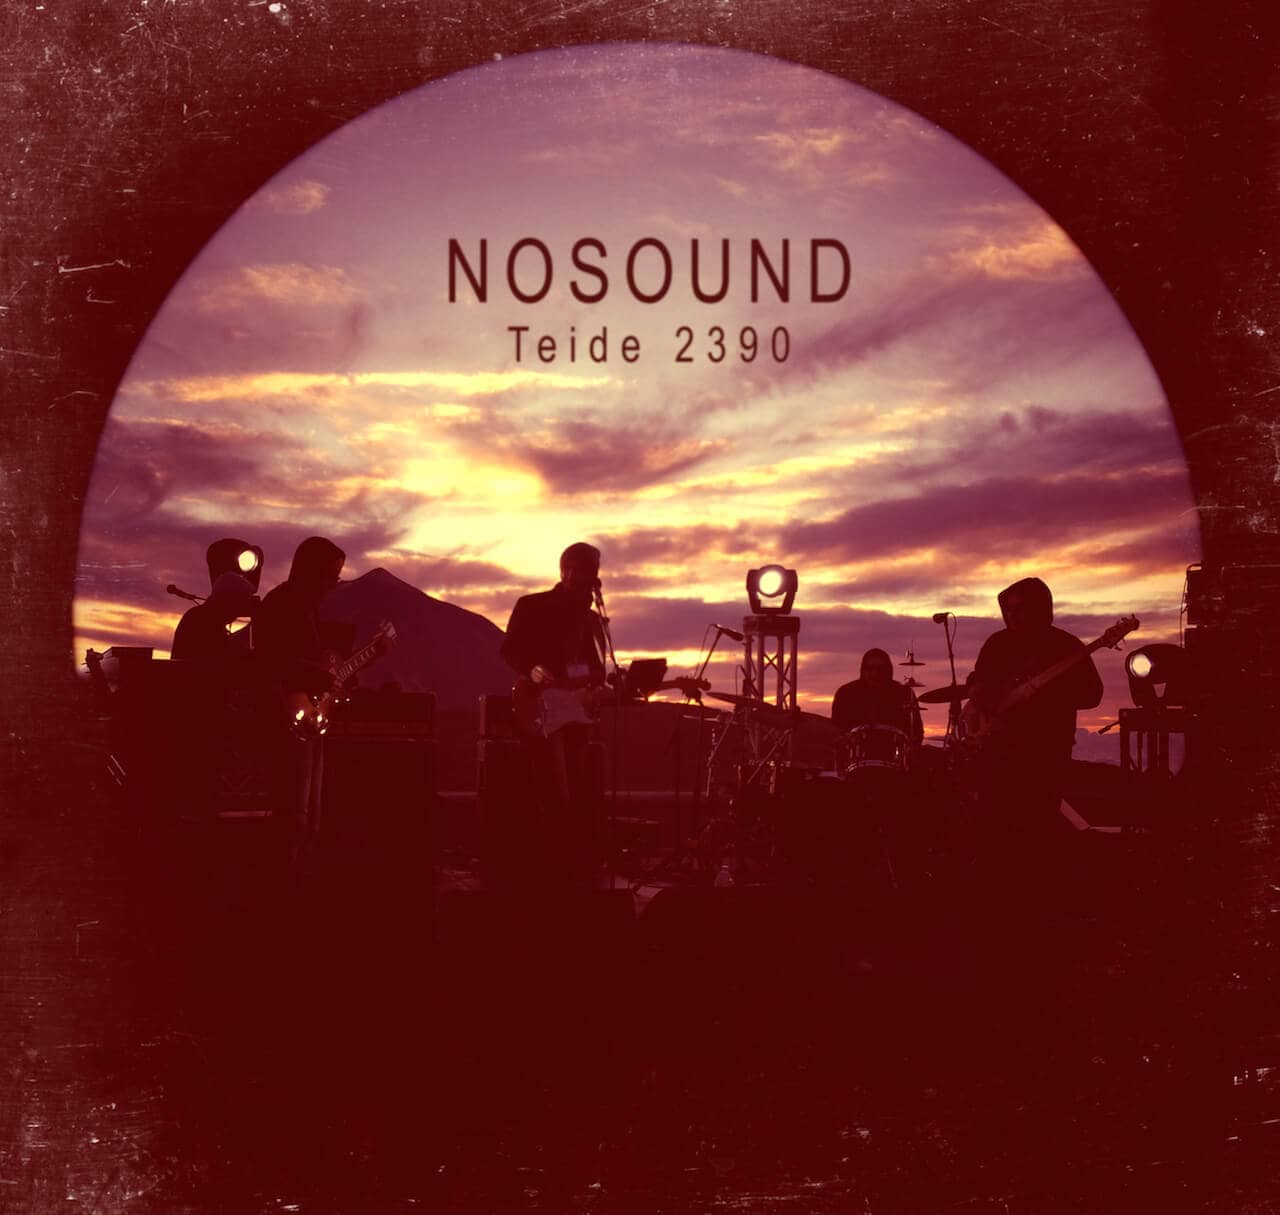 Nosound Teide 2390 album cover